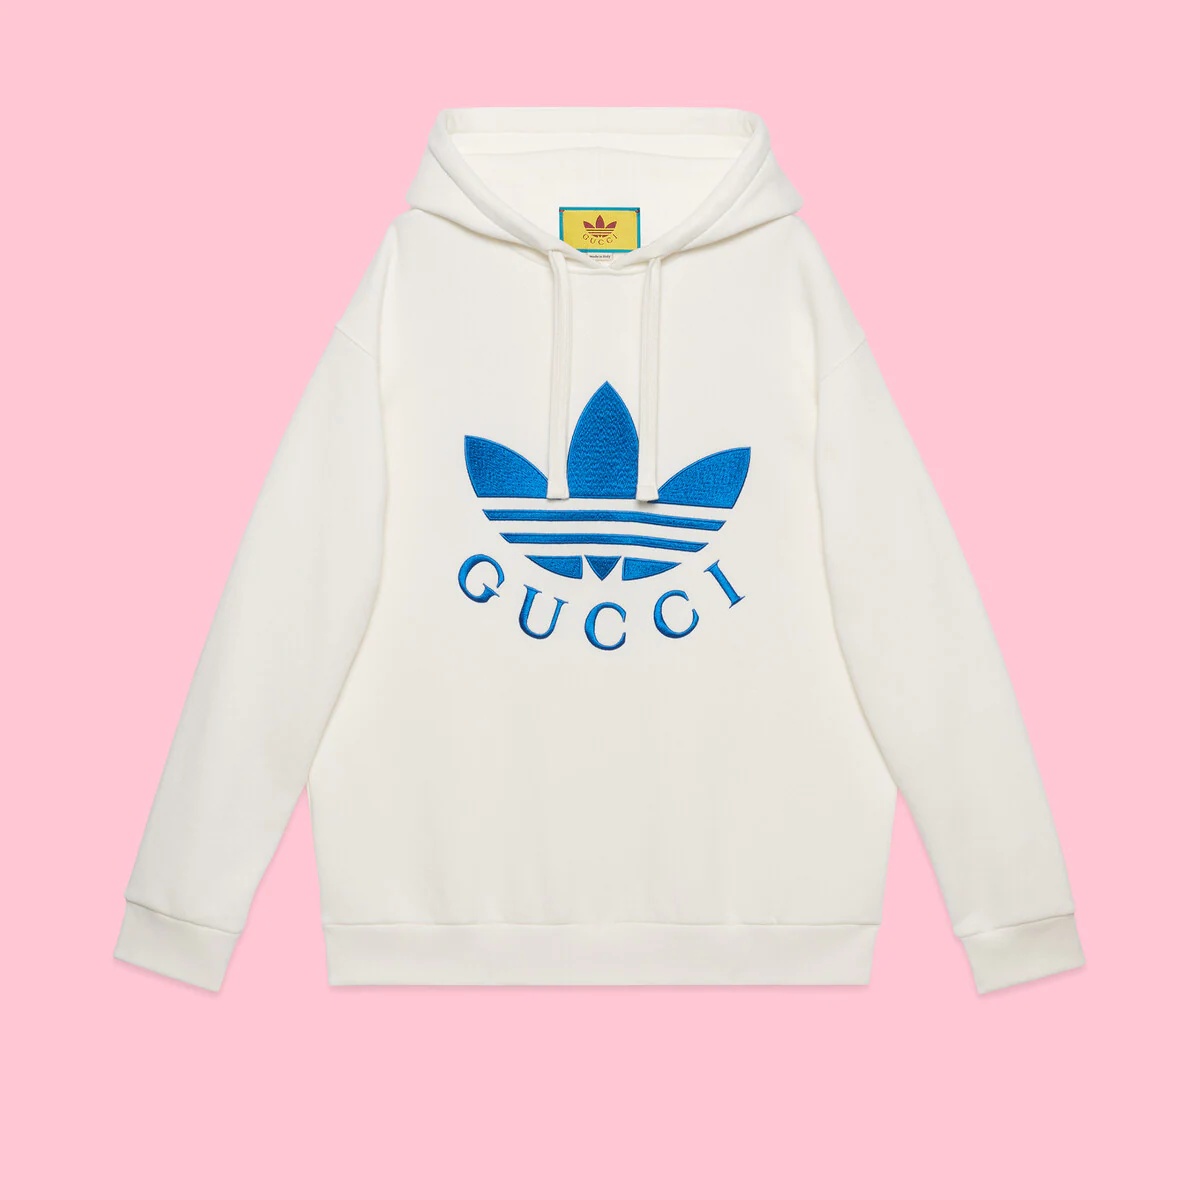 adidas x Gucci sweatshirt - 1